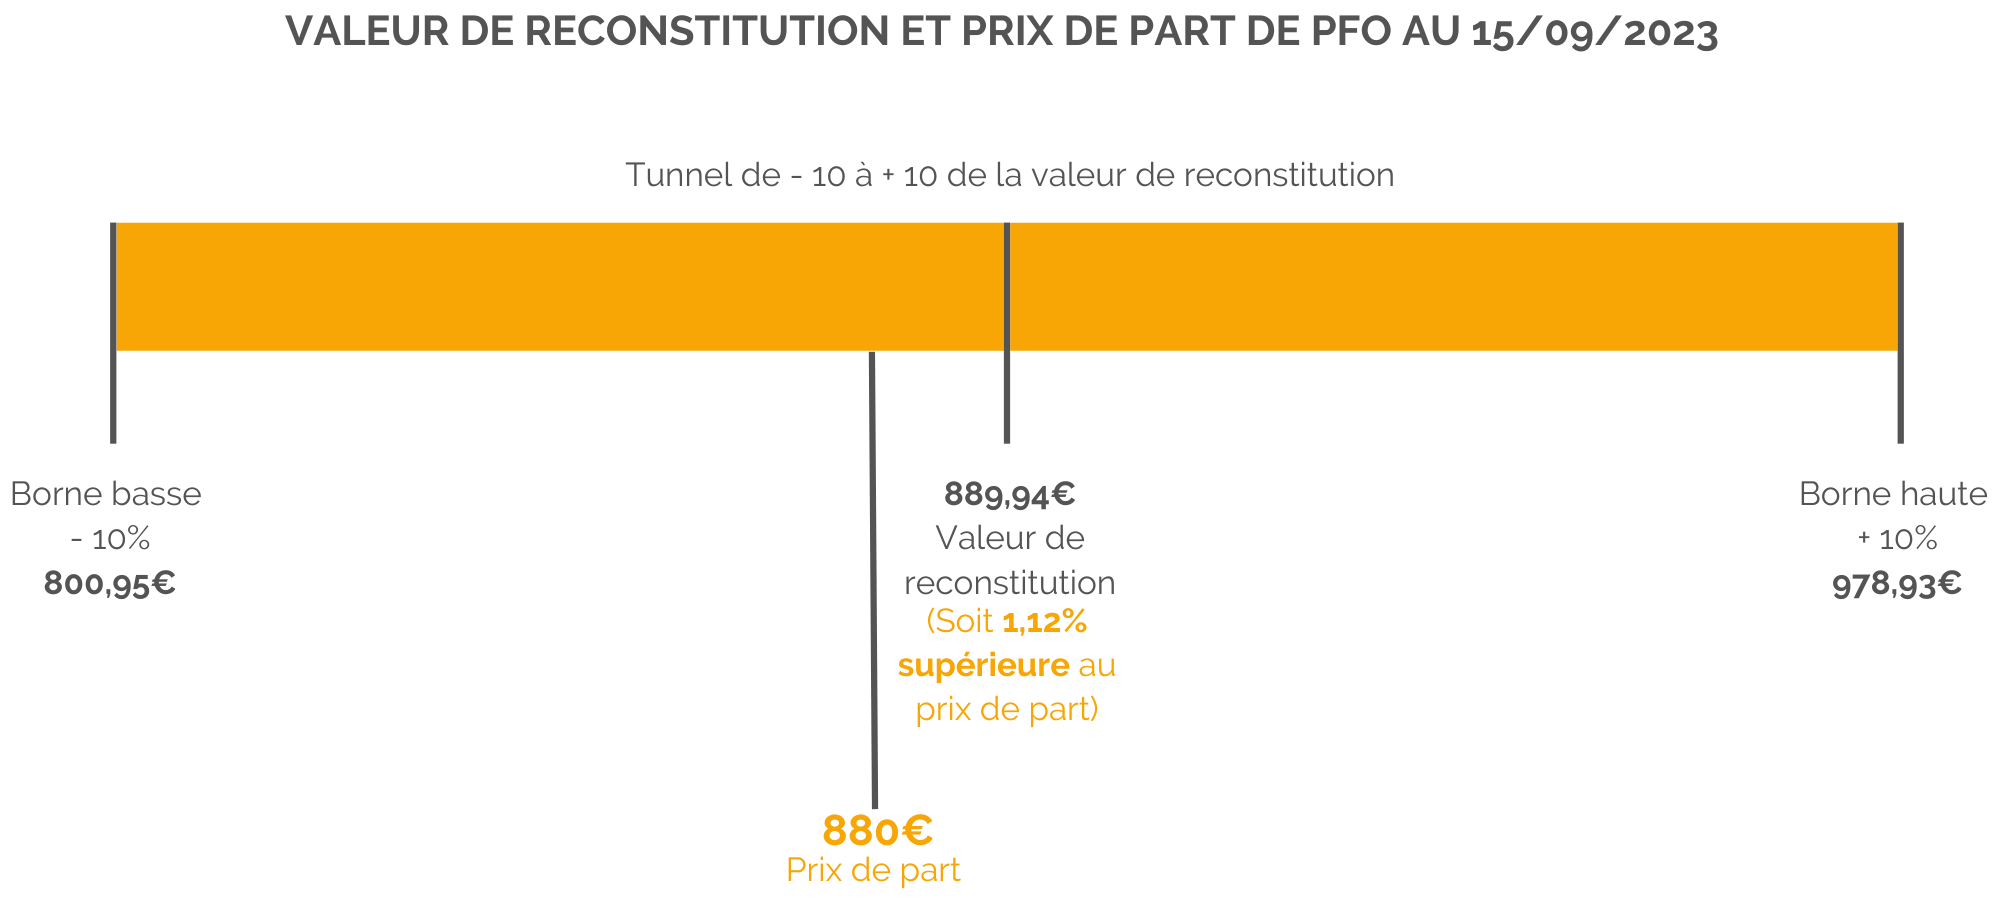 Schéma valeur de reconstitution et prix de part SCPI PFO